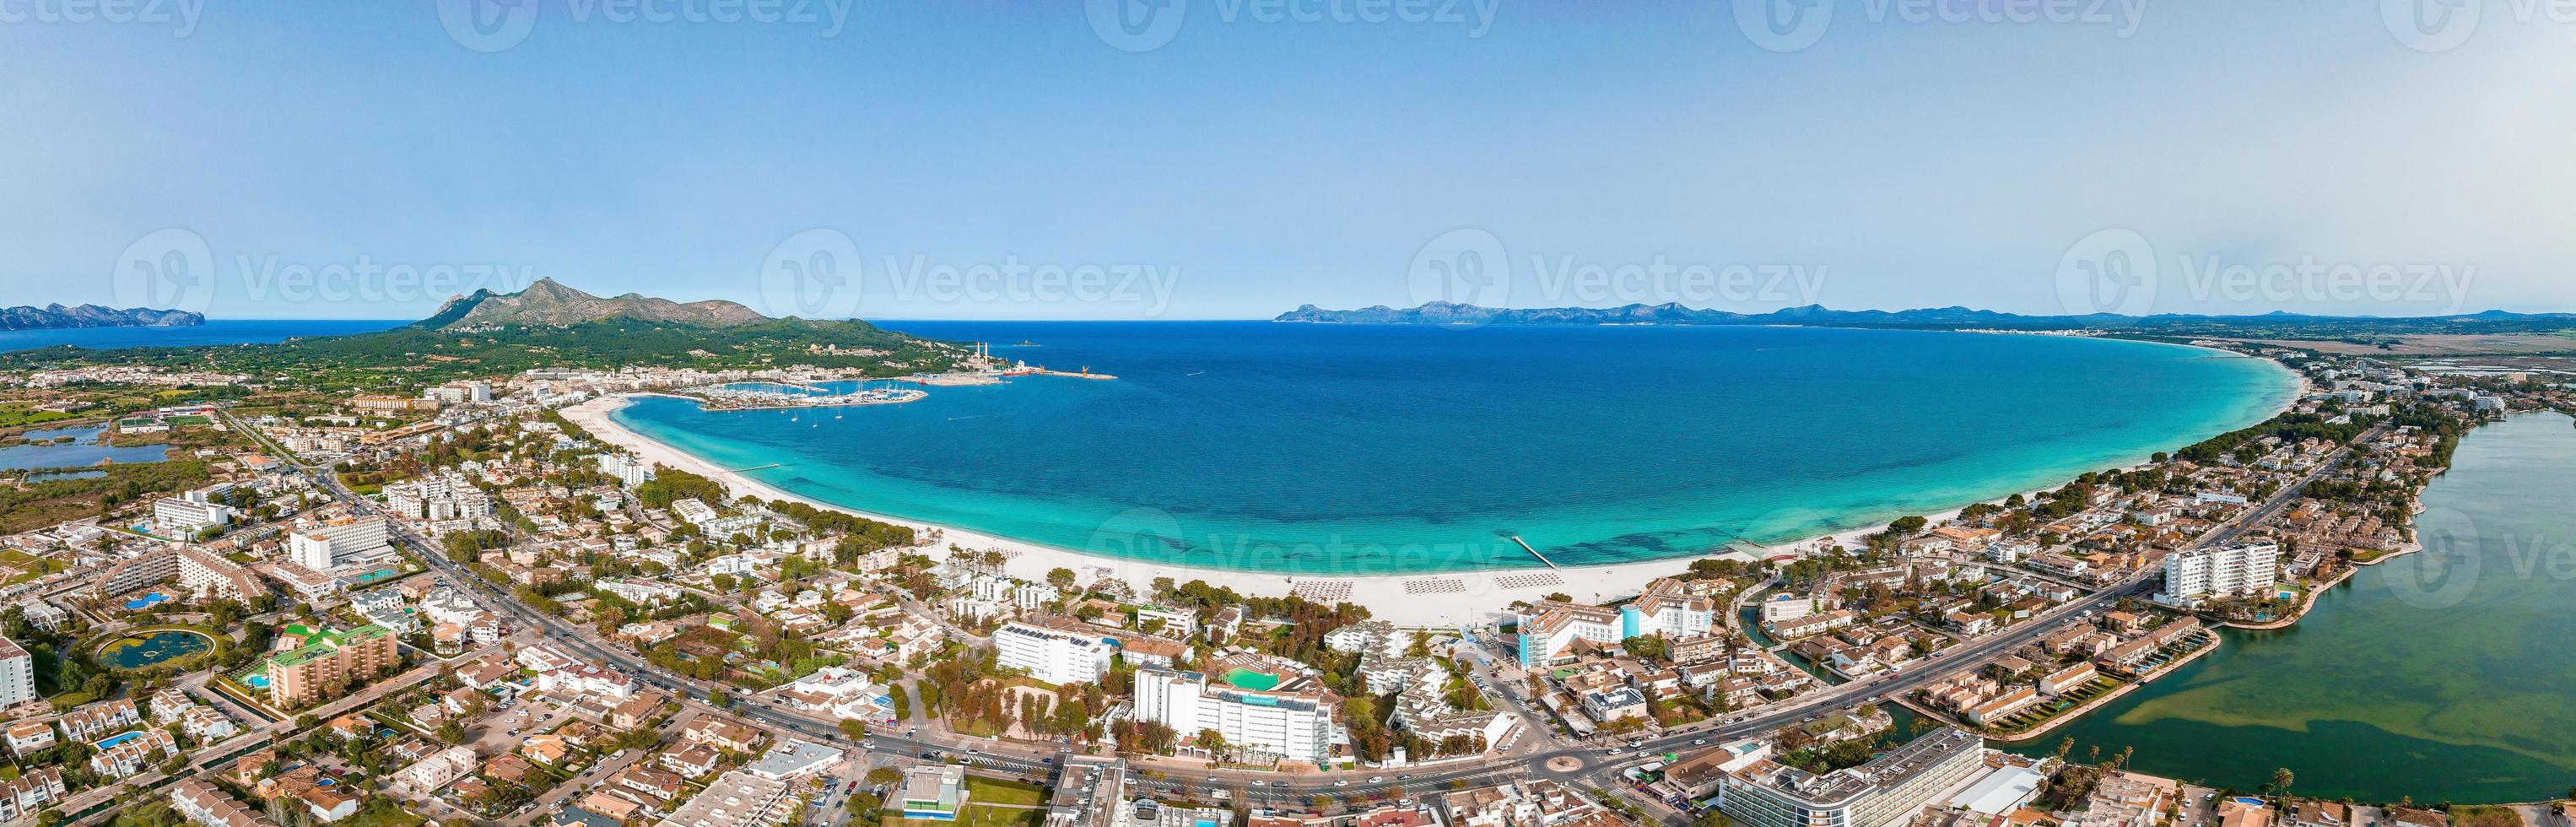 veduta aerea della spiaggia di palma de mallorca foto